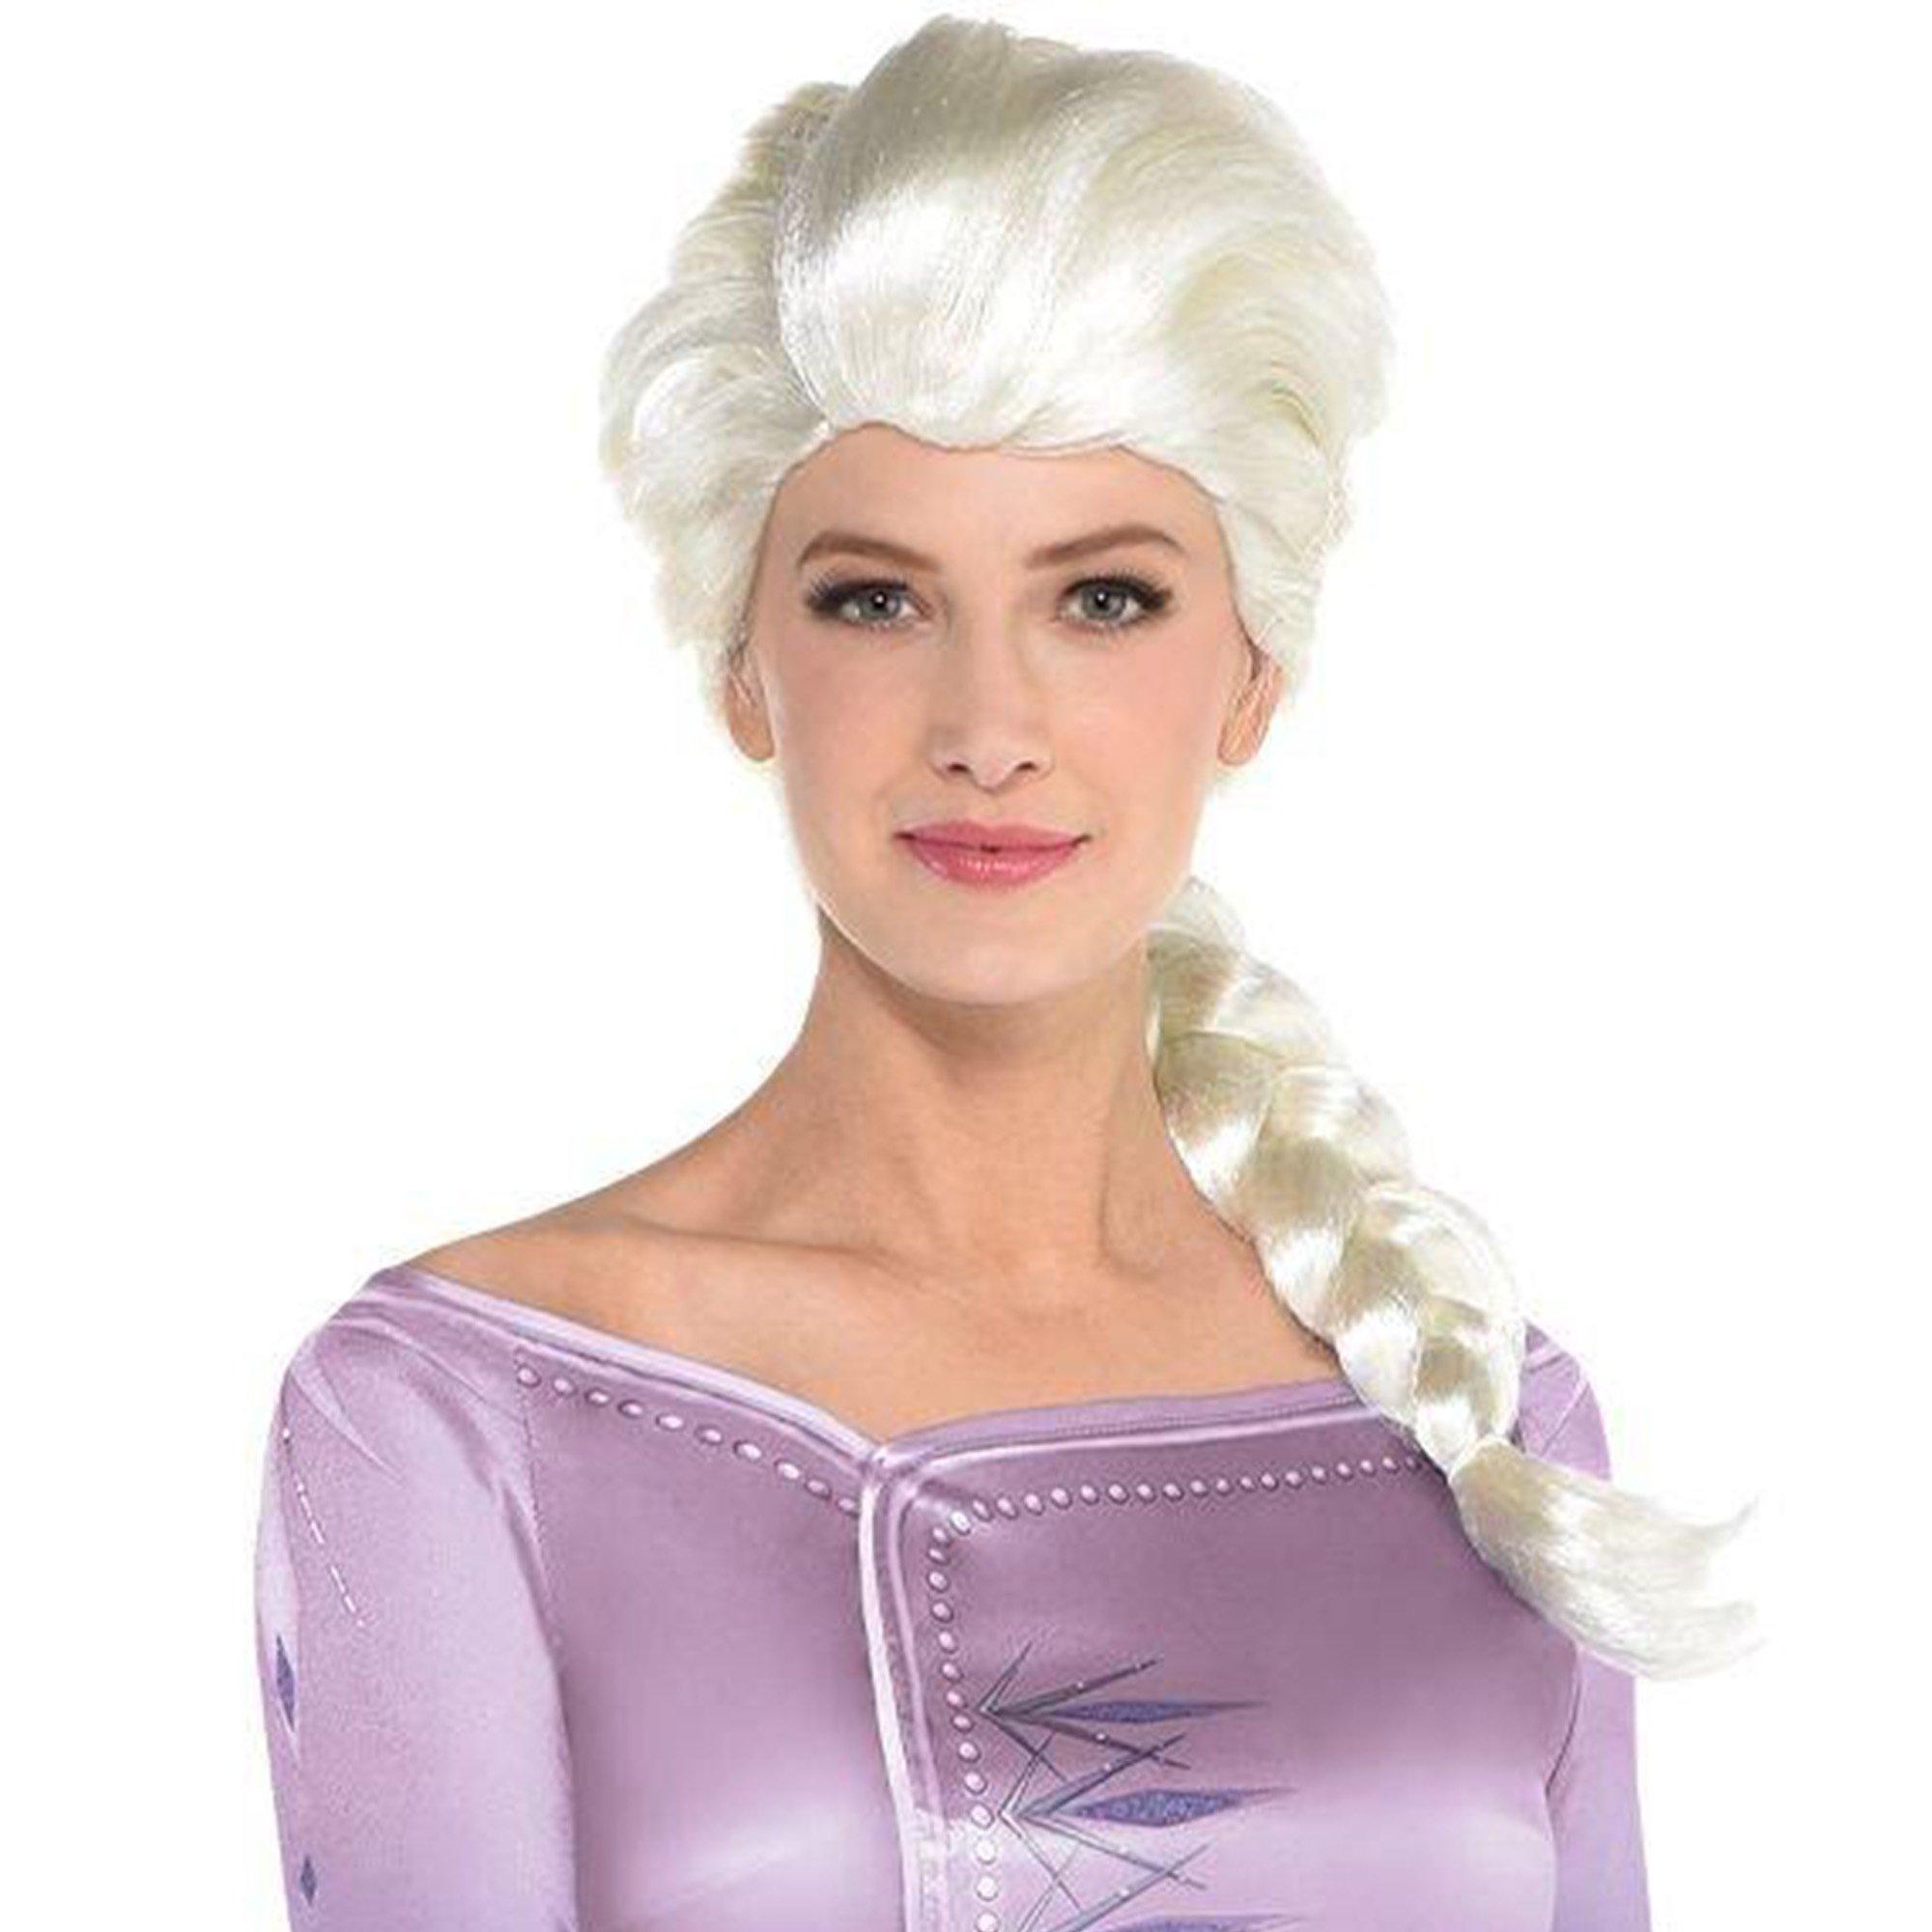 Adult Act 1 Elsa Costume - Frozen 2